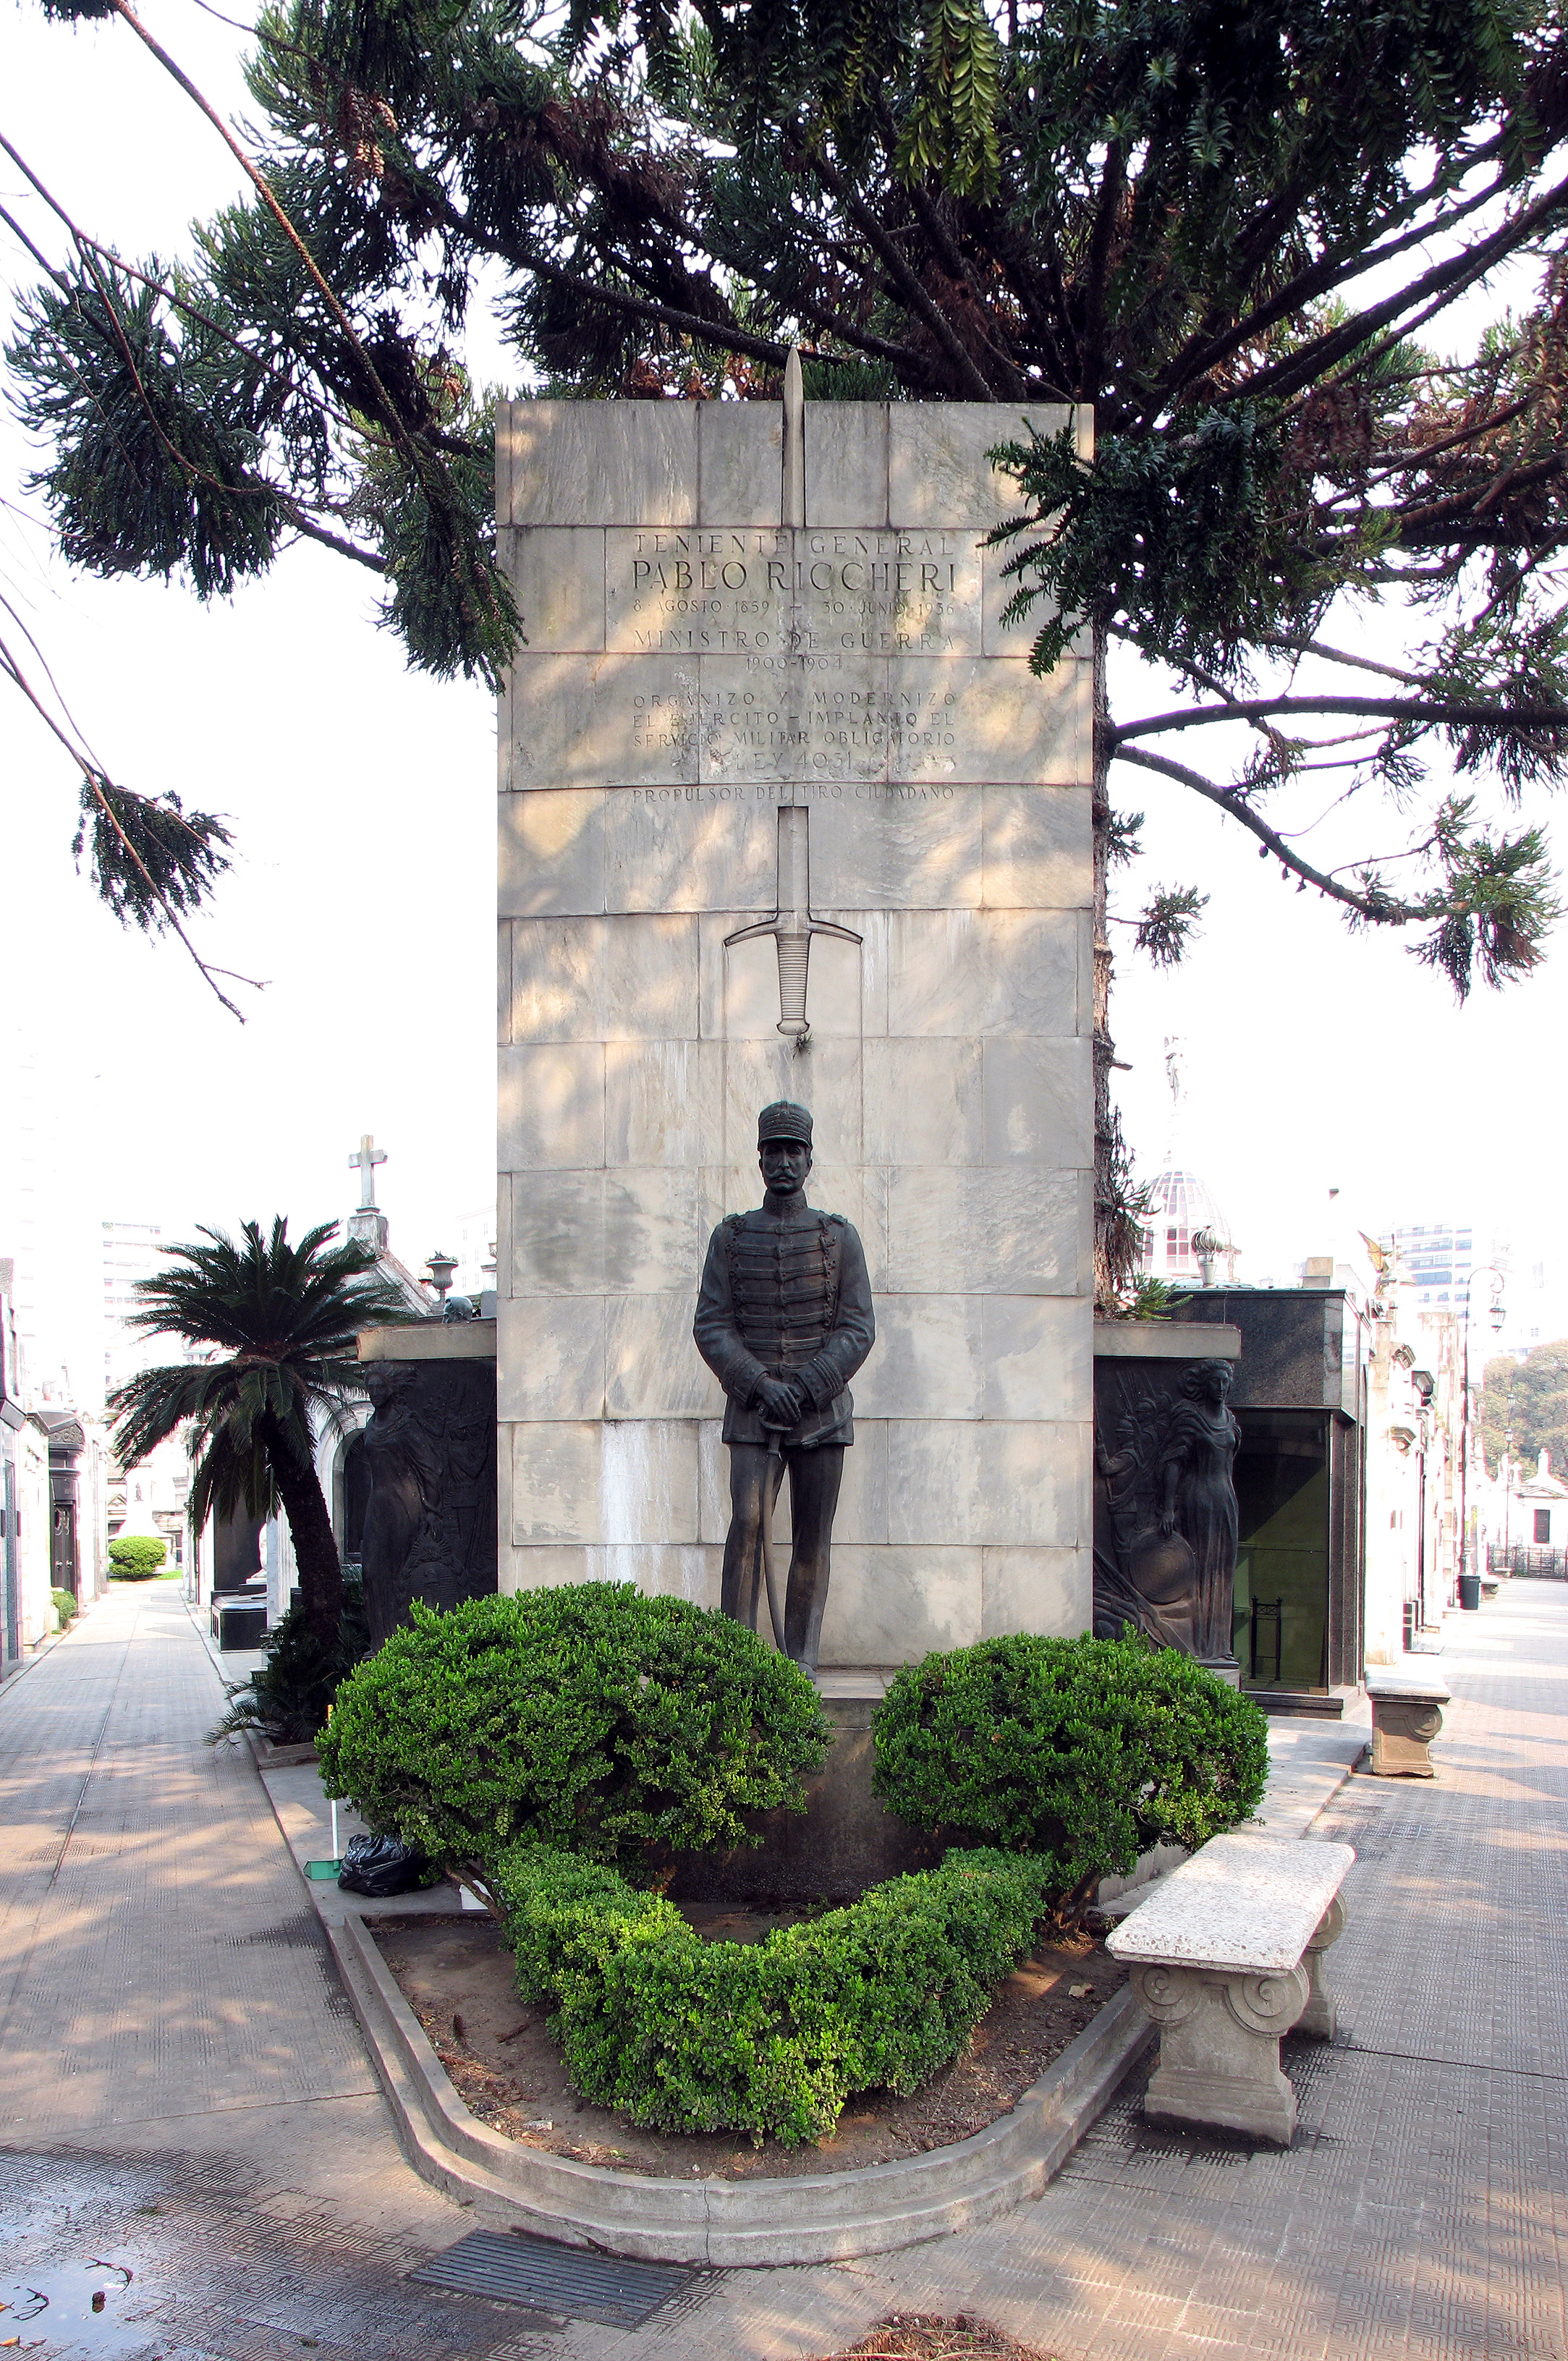 Pablo Riccheri Statue, Bronze, Cement, Cemetery, Concrete, HQ Photo